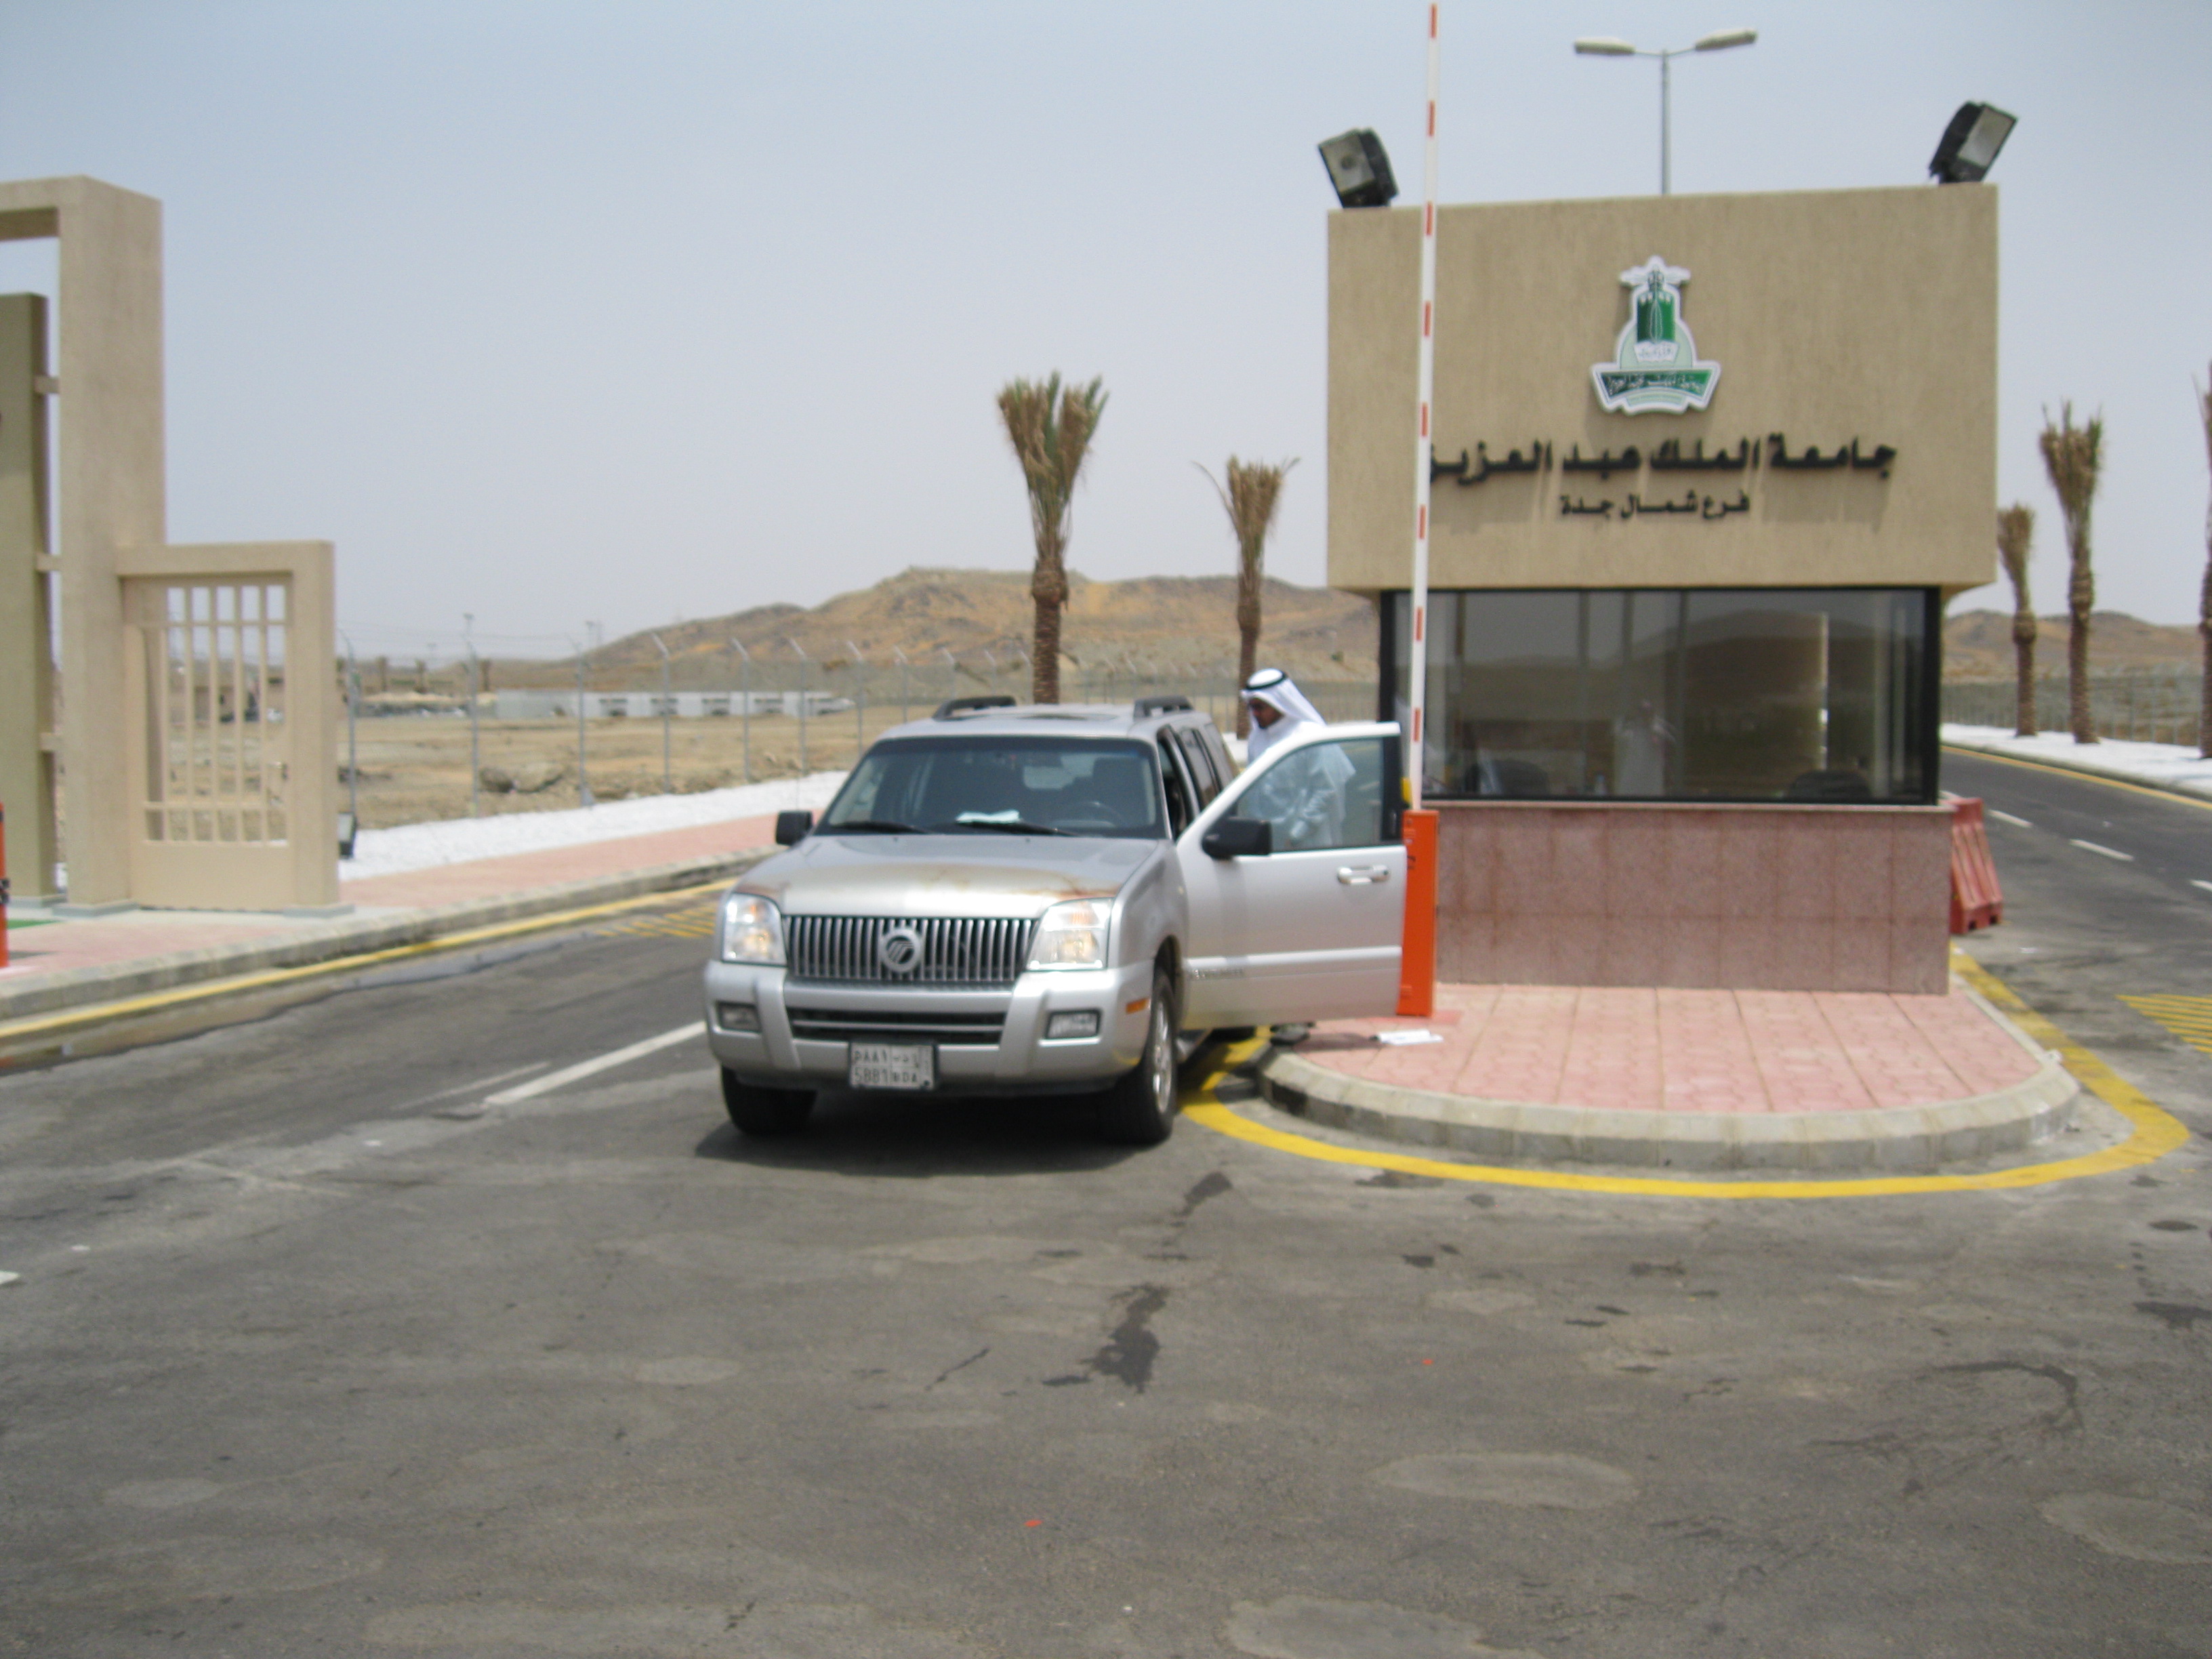 بوابة جامعة الملك عبدالعزيز